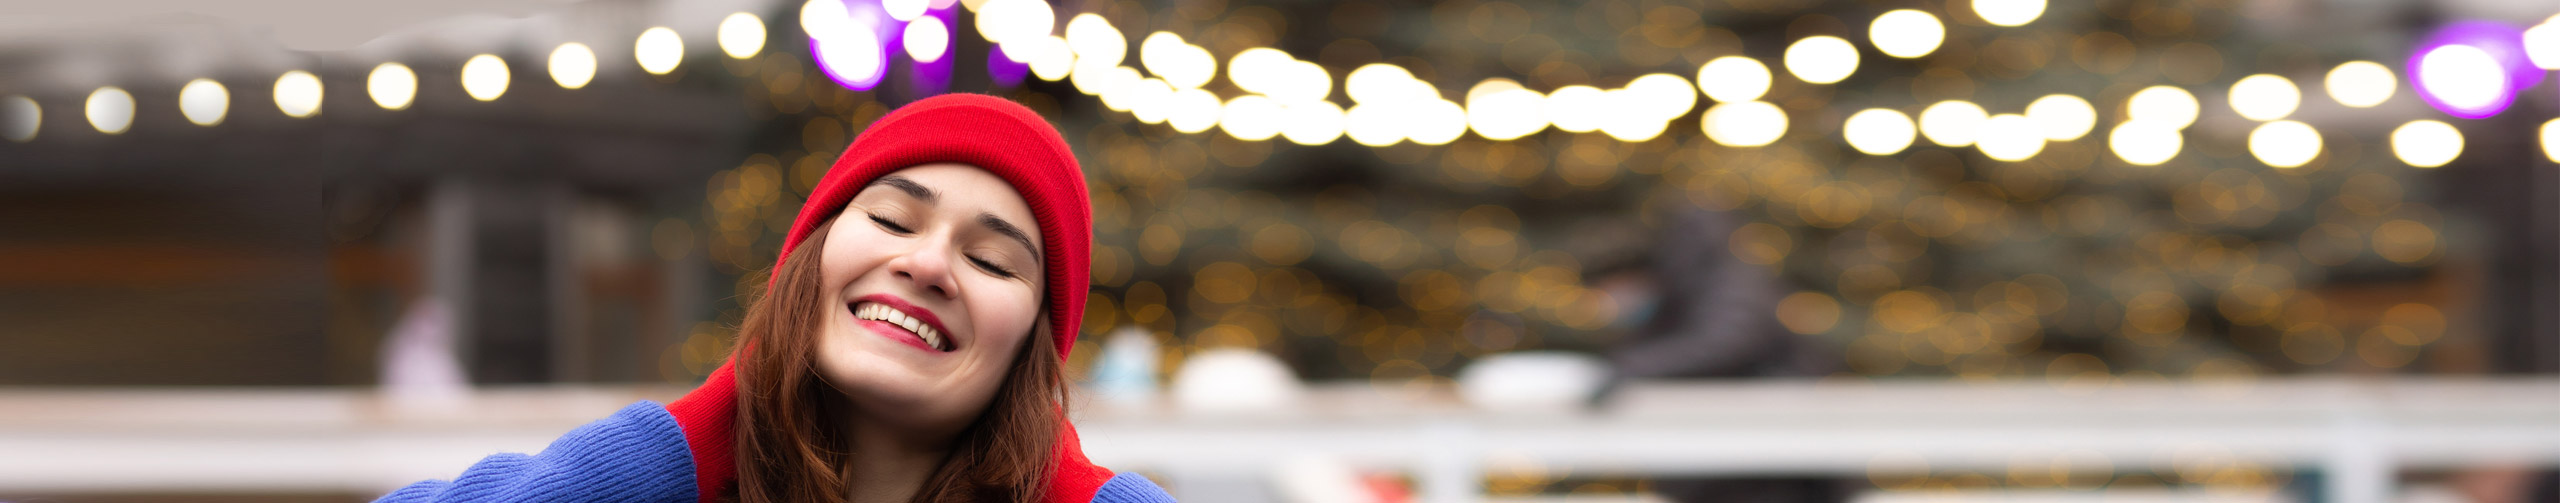 Junge Frau mit roter Mütze im Schnee